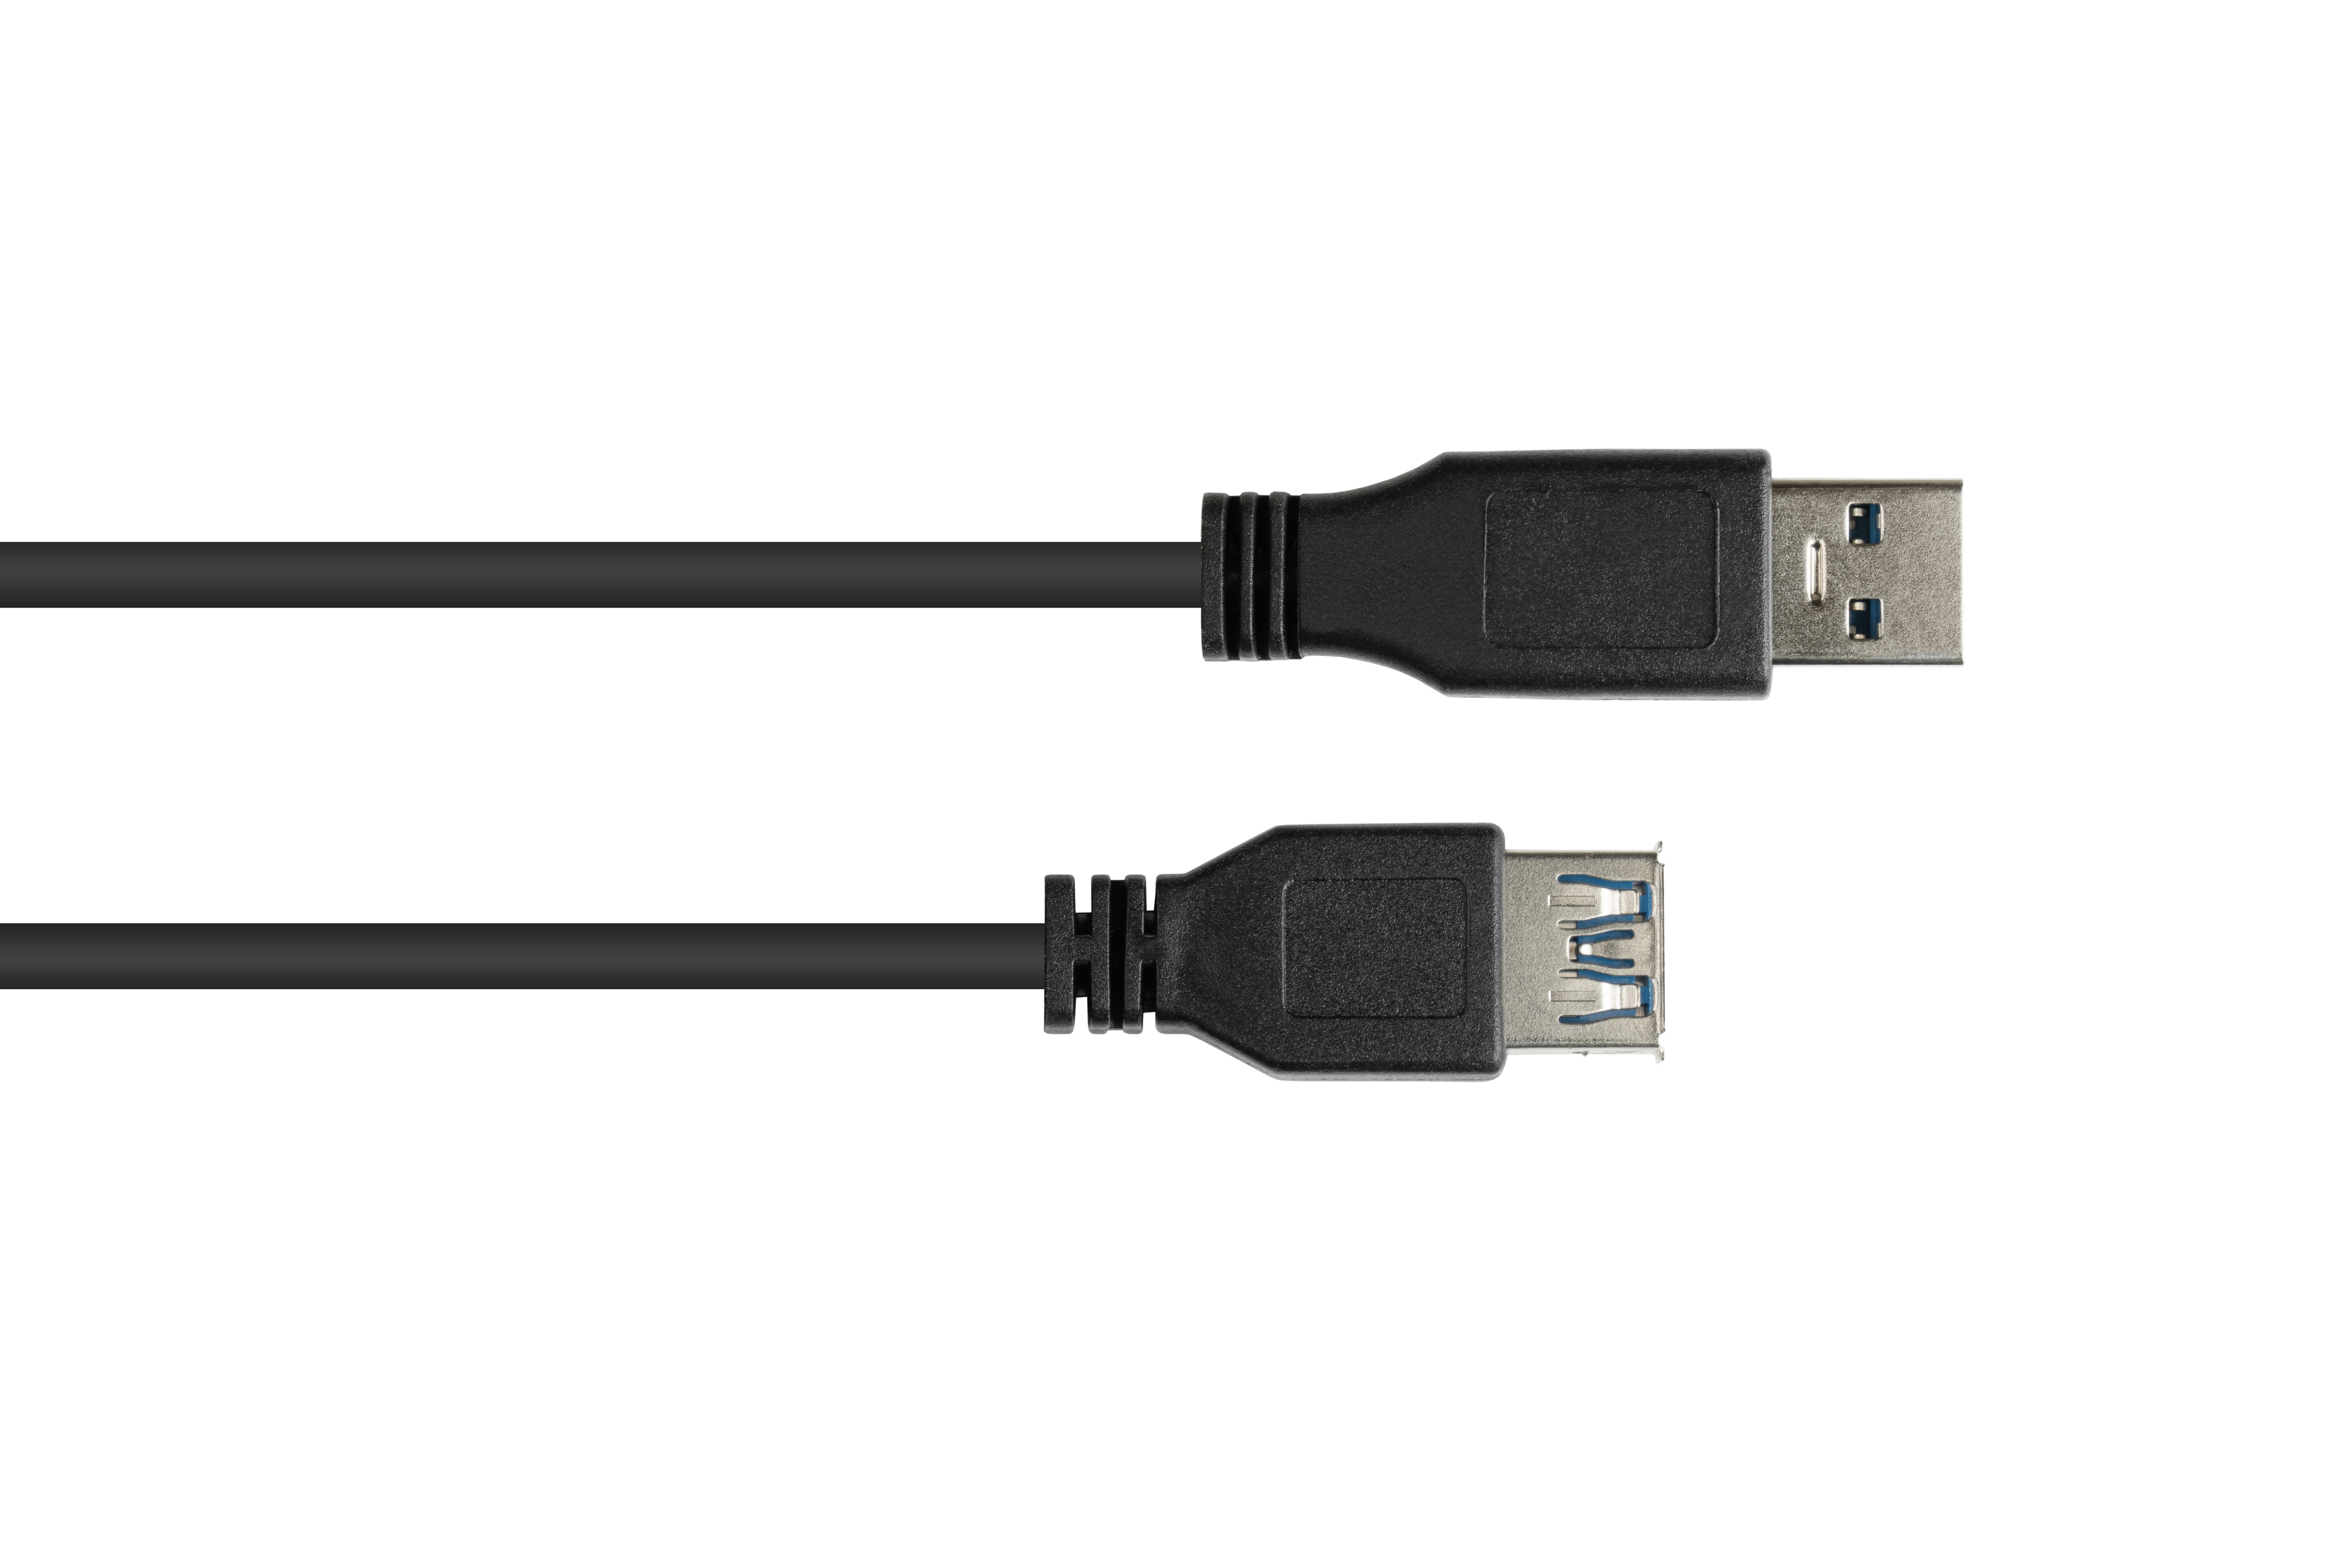 GOOD CONNECTIONS USB 3.0 Stecker A, Buchse Verlängerungskabel A an schwarz